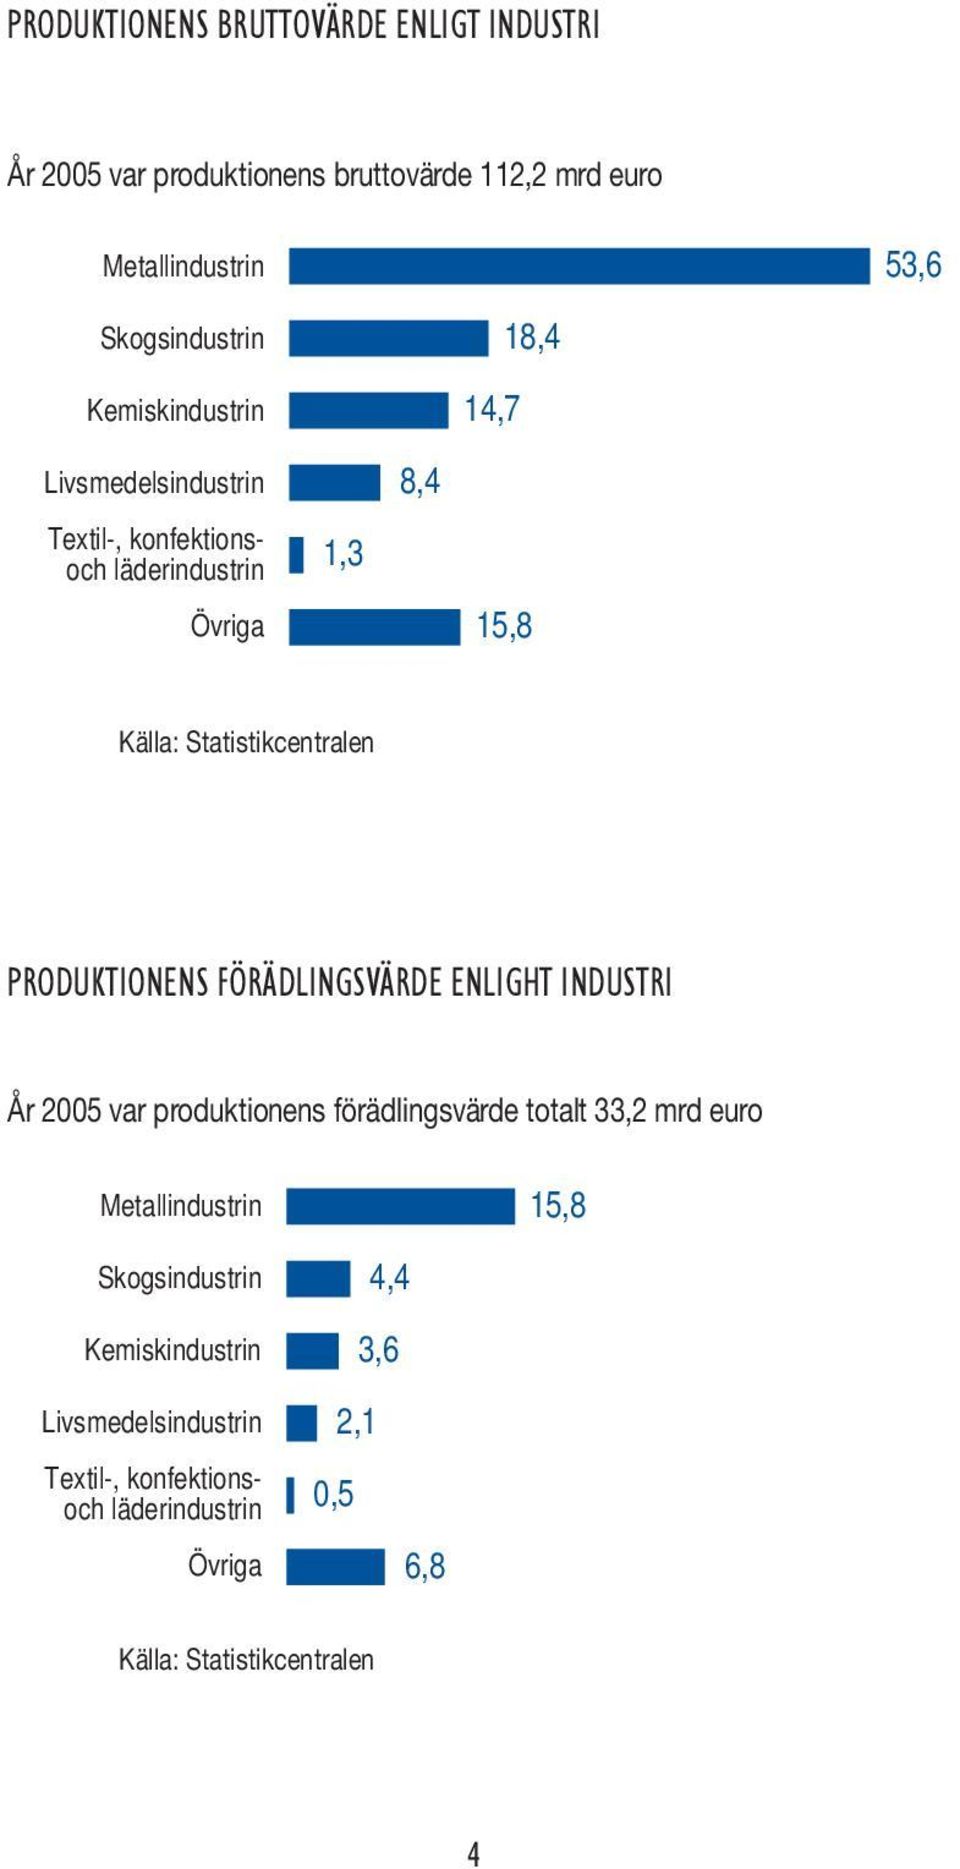 PRODUKTIONENS FÖRÄDLINGSVÄRDE ENLIGHT INDUSTRI År 2005 var produktionens förädlingsvärde totalt 33,2 mrd euro Metallindustrin 15,8